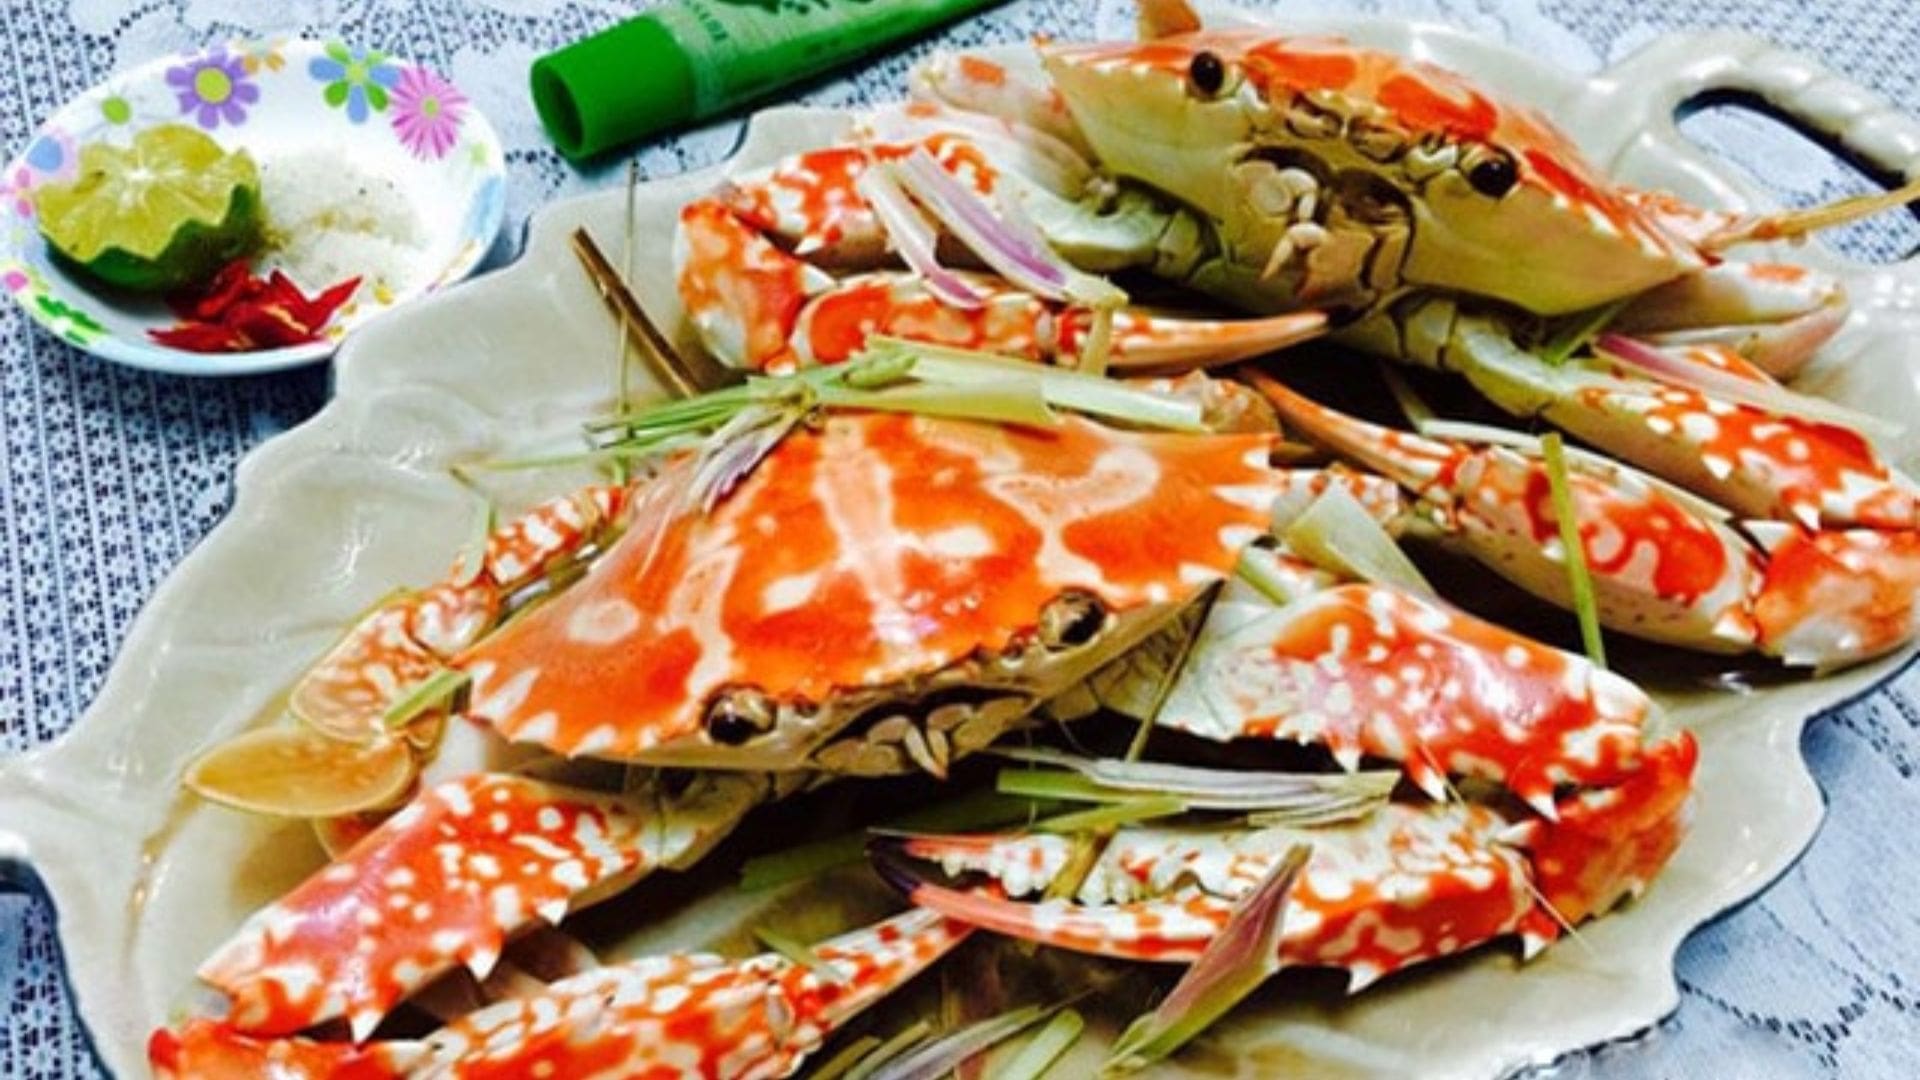 Hải sản Phong Phú 2 - Nhà hàng hải sản Đà Nẵng nổi tiếng 